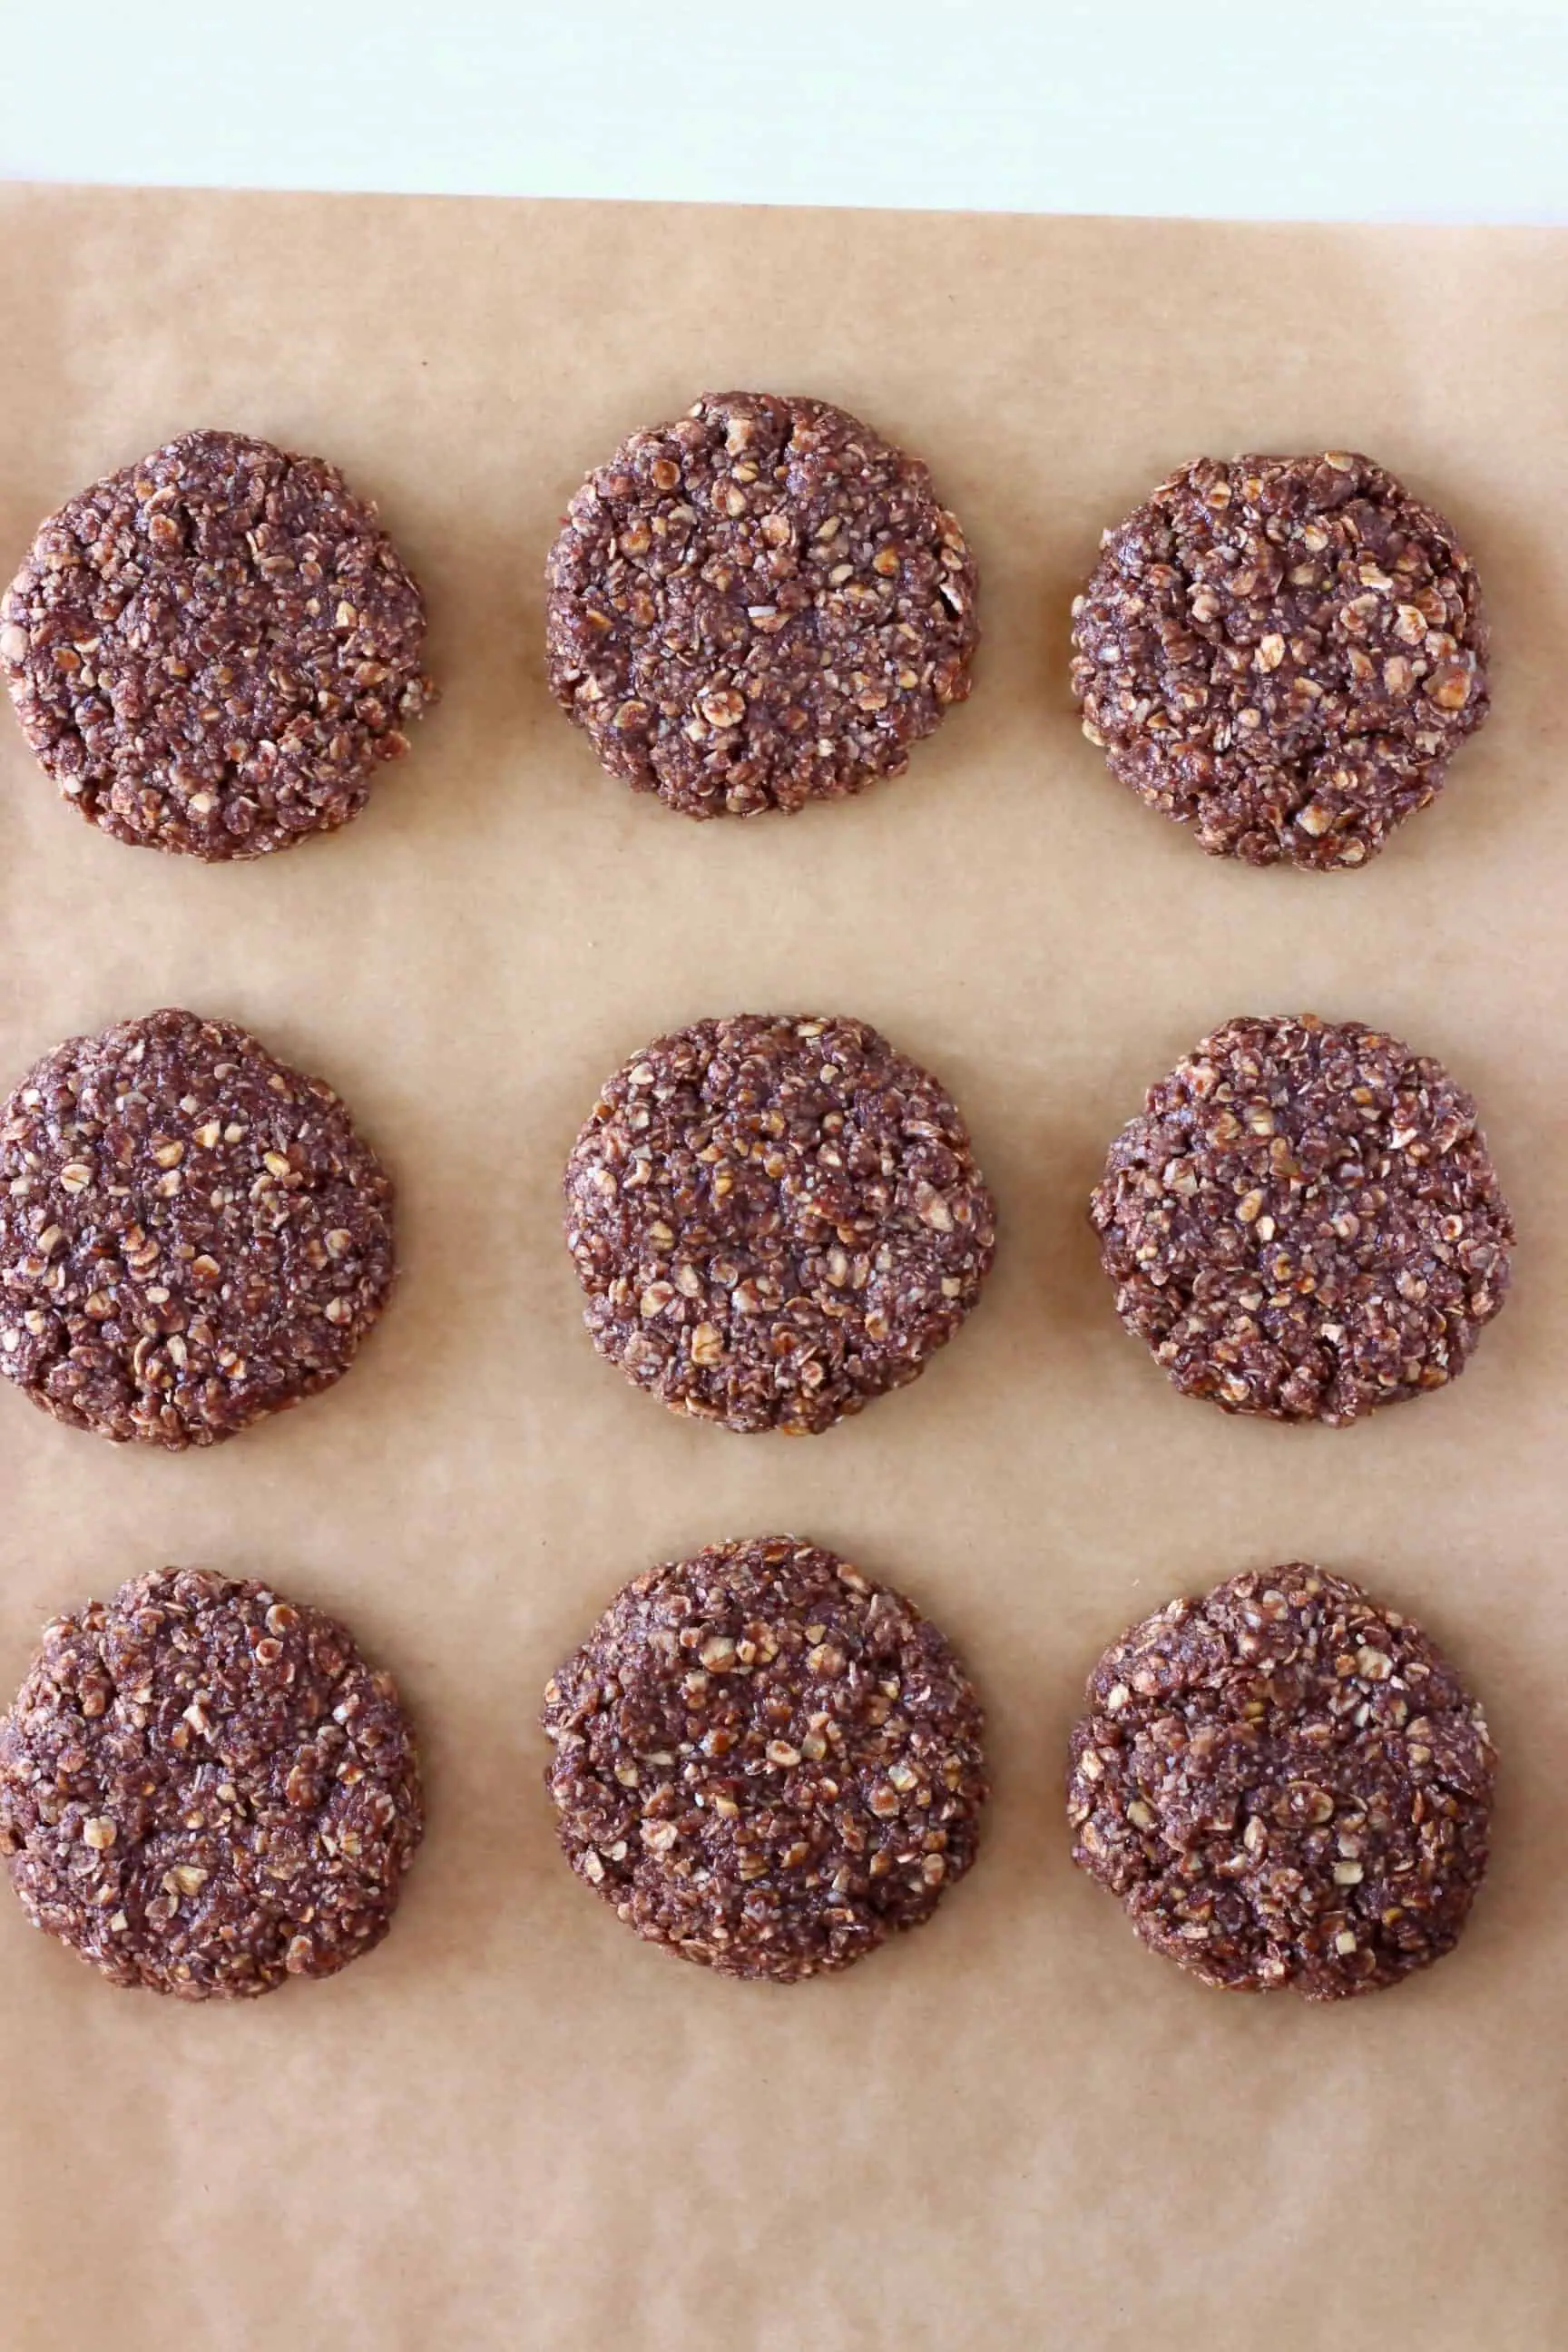 Nine gluten-free vegan chocolate no-bake cookies on a sheet of baking paper